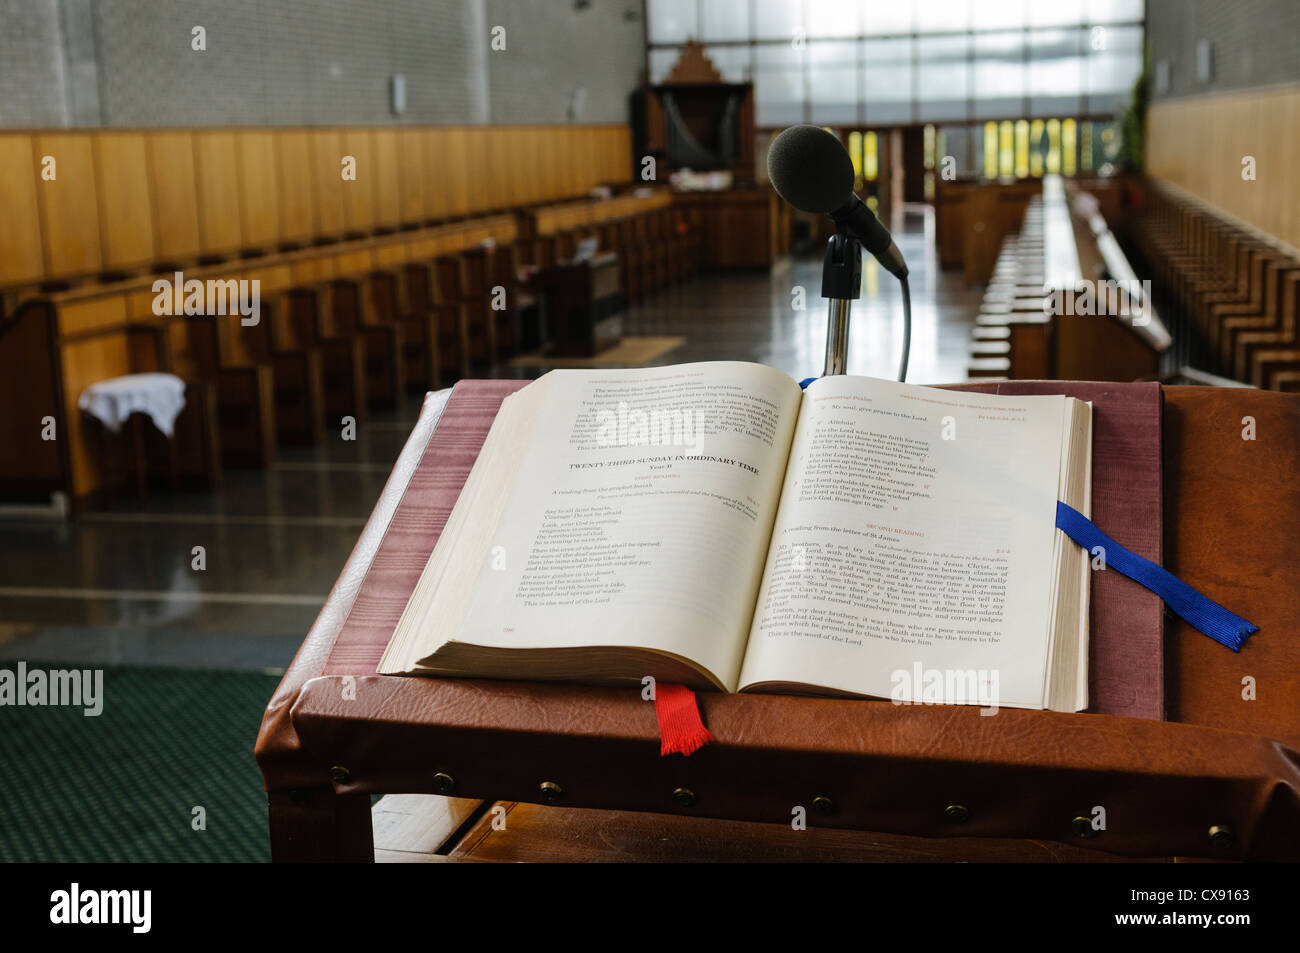 Servicio de iglesia libro abierto en la página para el domingo 23 en un monasterio Foto de stock